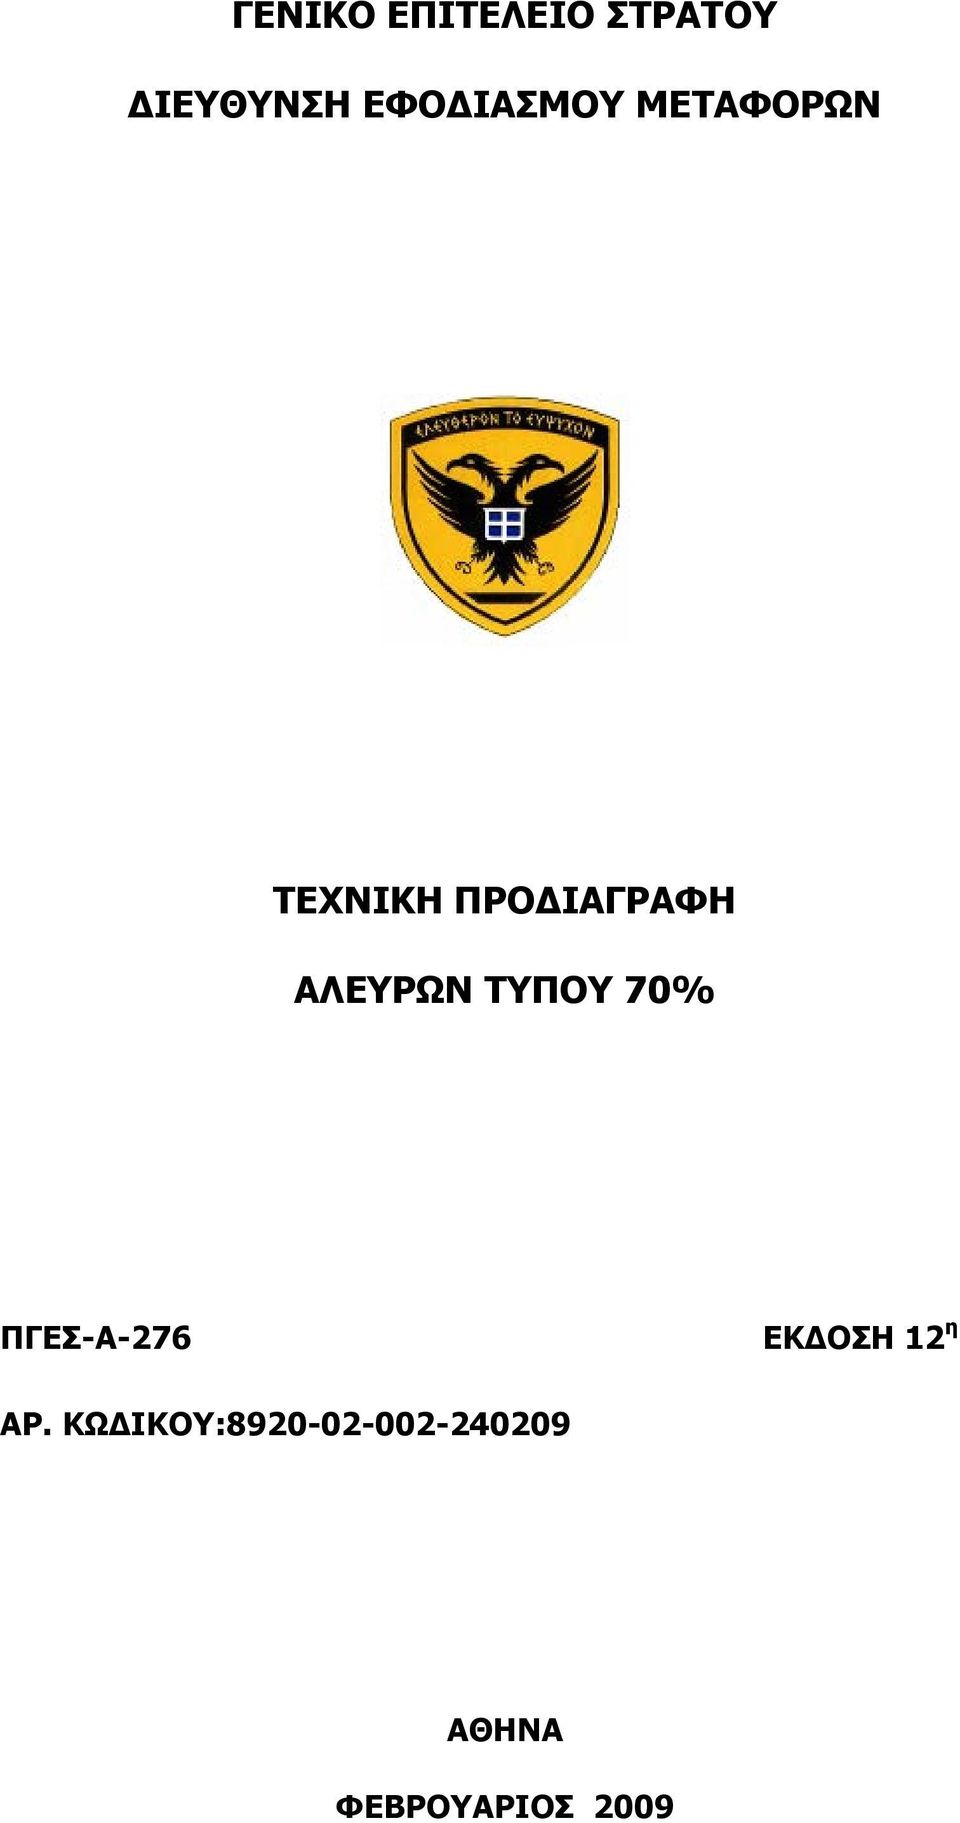 ΑΛΔΤΡΩΝ ΣΤΠΟΤ 70% ΠΓΔ-Α-276 ΔΚΓΟΗ 12 ε